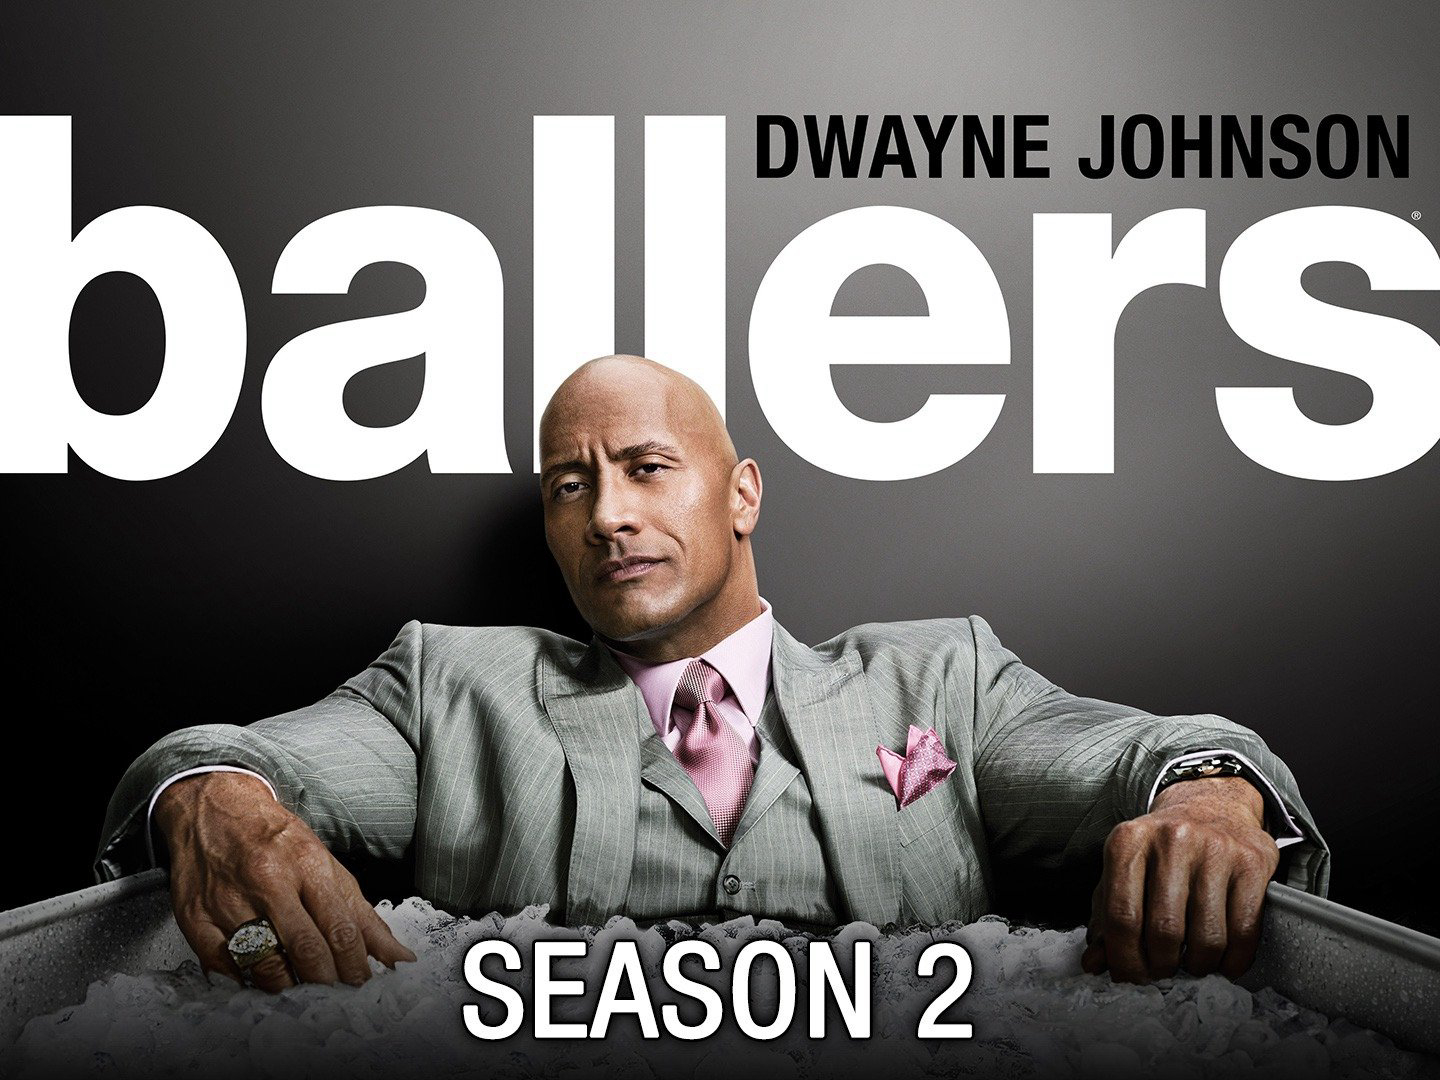 Ballers (Season 2) / Ballers (Season 2) (2016)